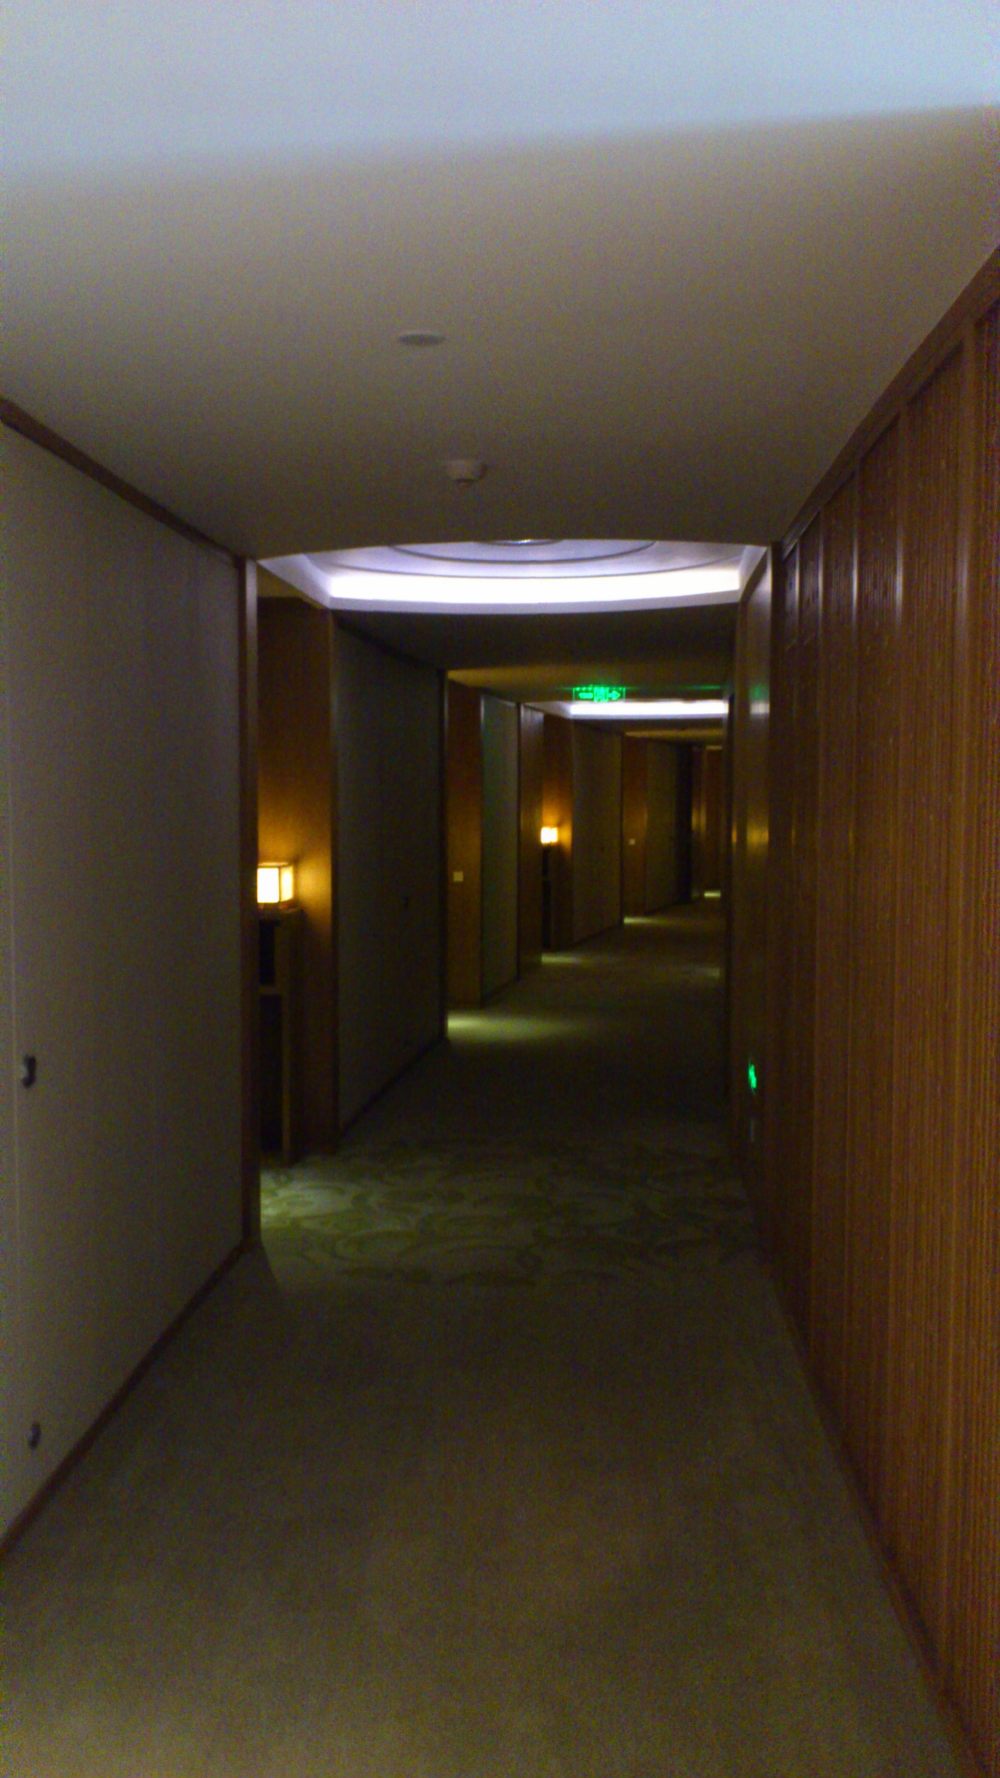 苏州晋合洲际Intercontinental酒店--2012.06.24第八页更新客房_DSC_1266.JPG